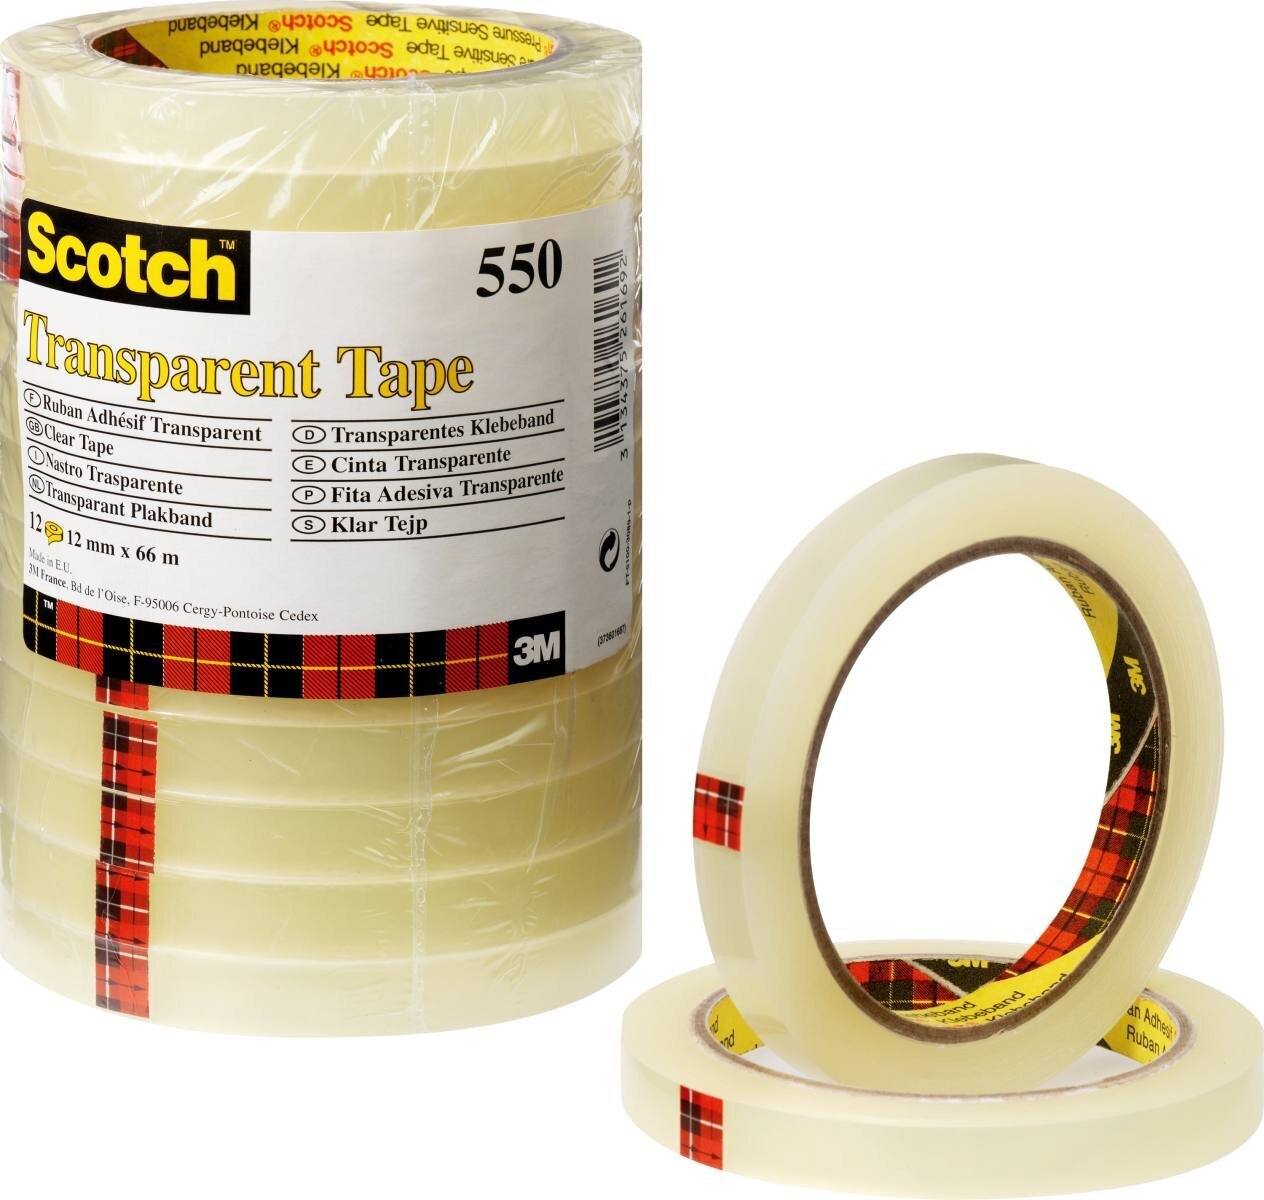 3M Scotch nastro adesivo trasparente 550, 19 mm x 66 m, trasparente, confezione da 8 rotoli